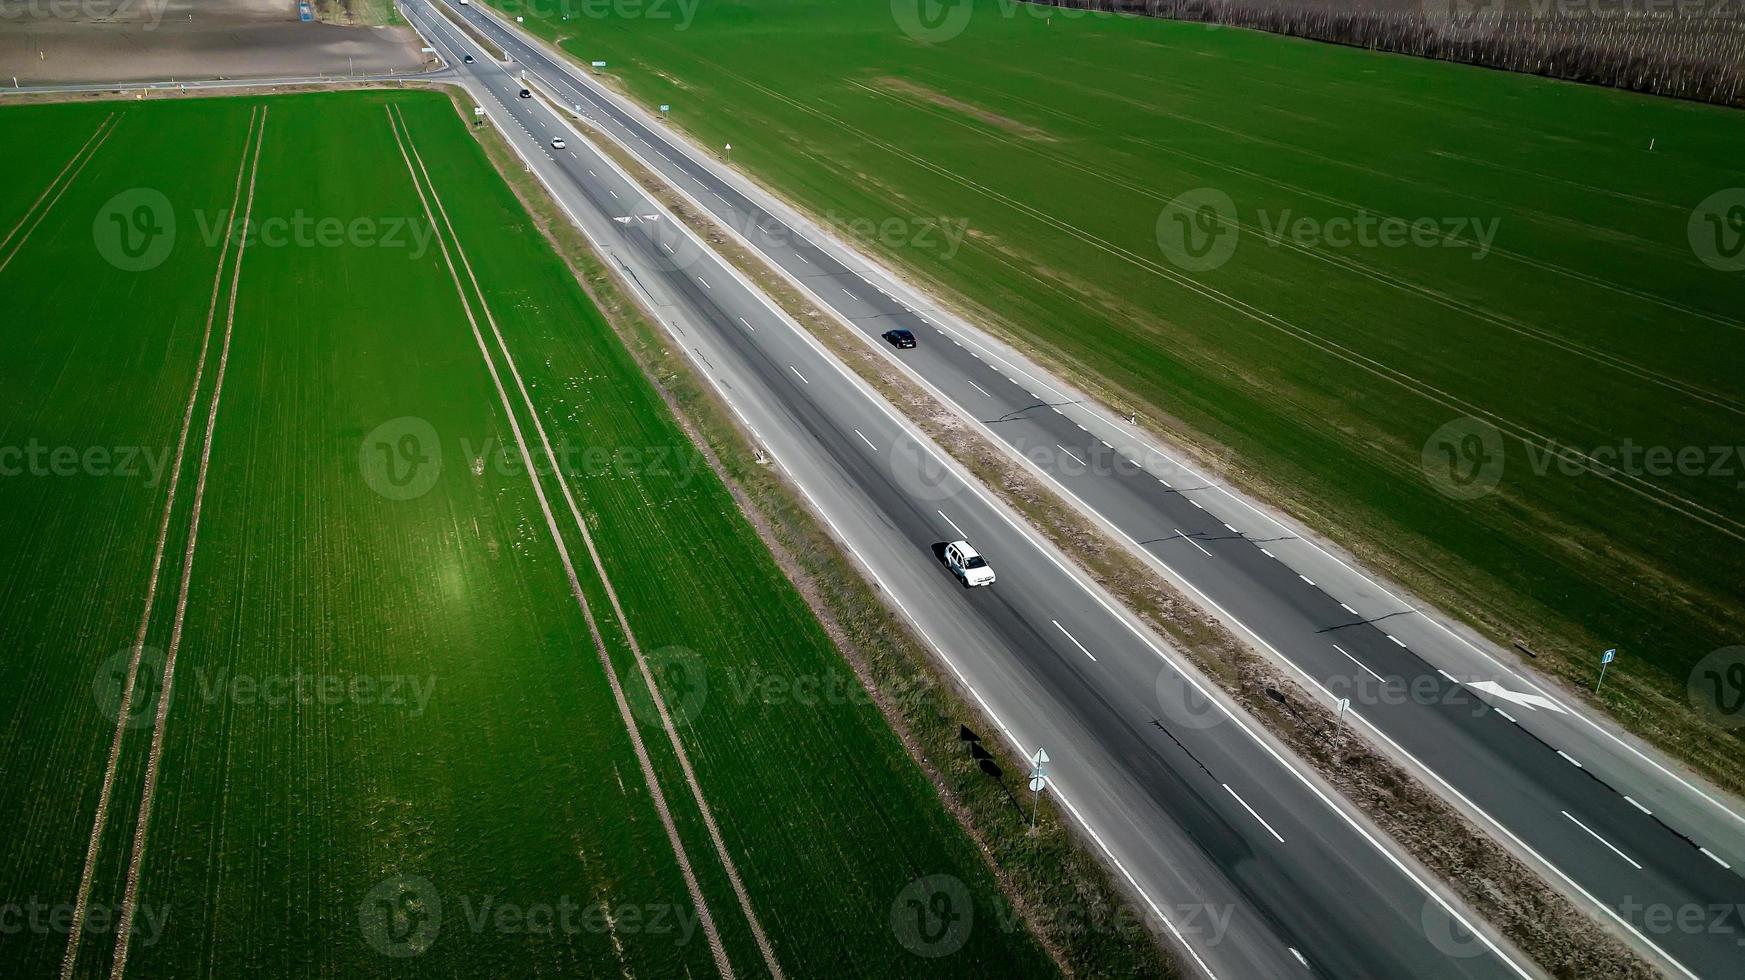 vue aérienne de la circulation sur une route à deux voies à travers la campagne et les champs cultivés photo